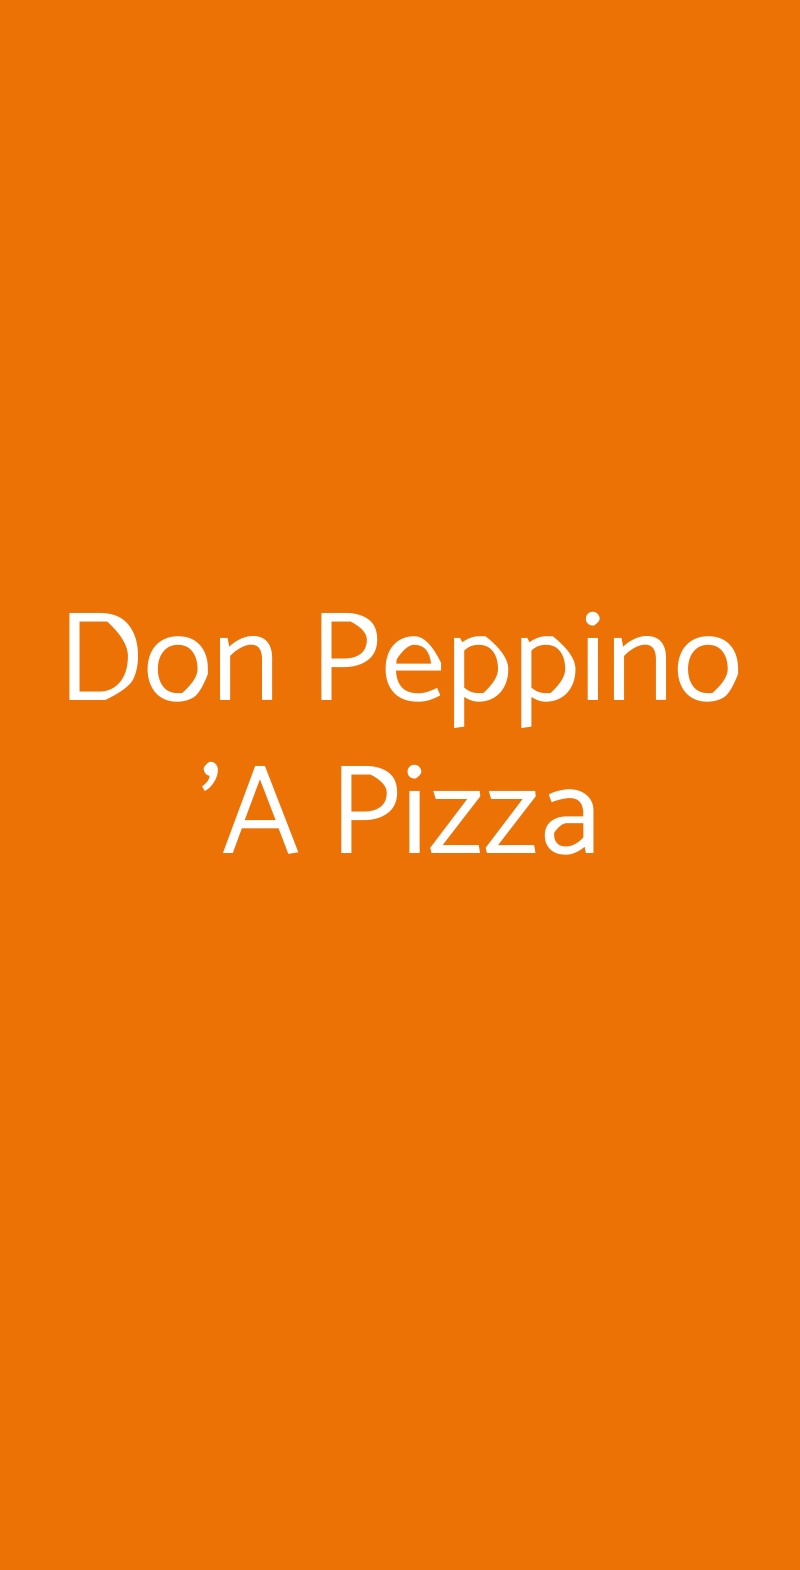 Don Peppino 'A Pizza Mazzano menù 1 pagina